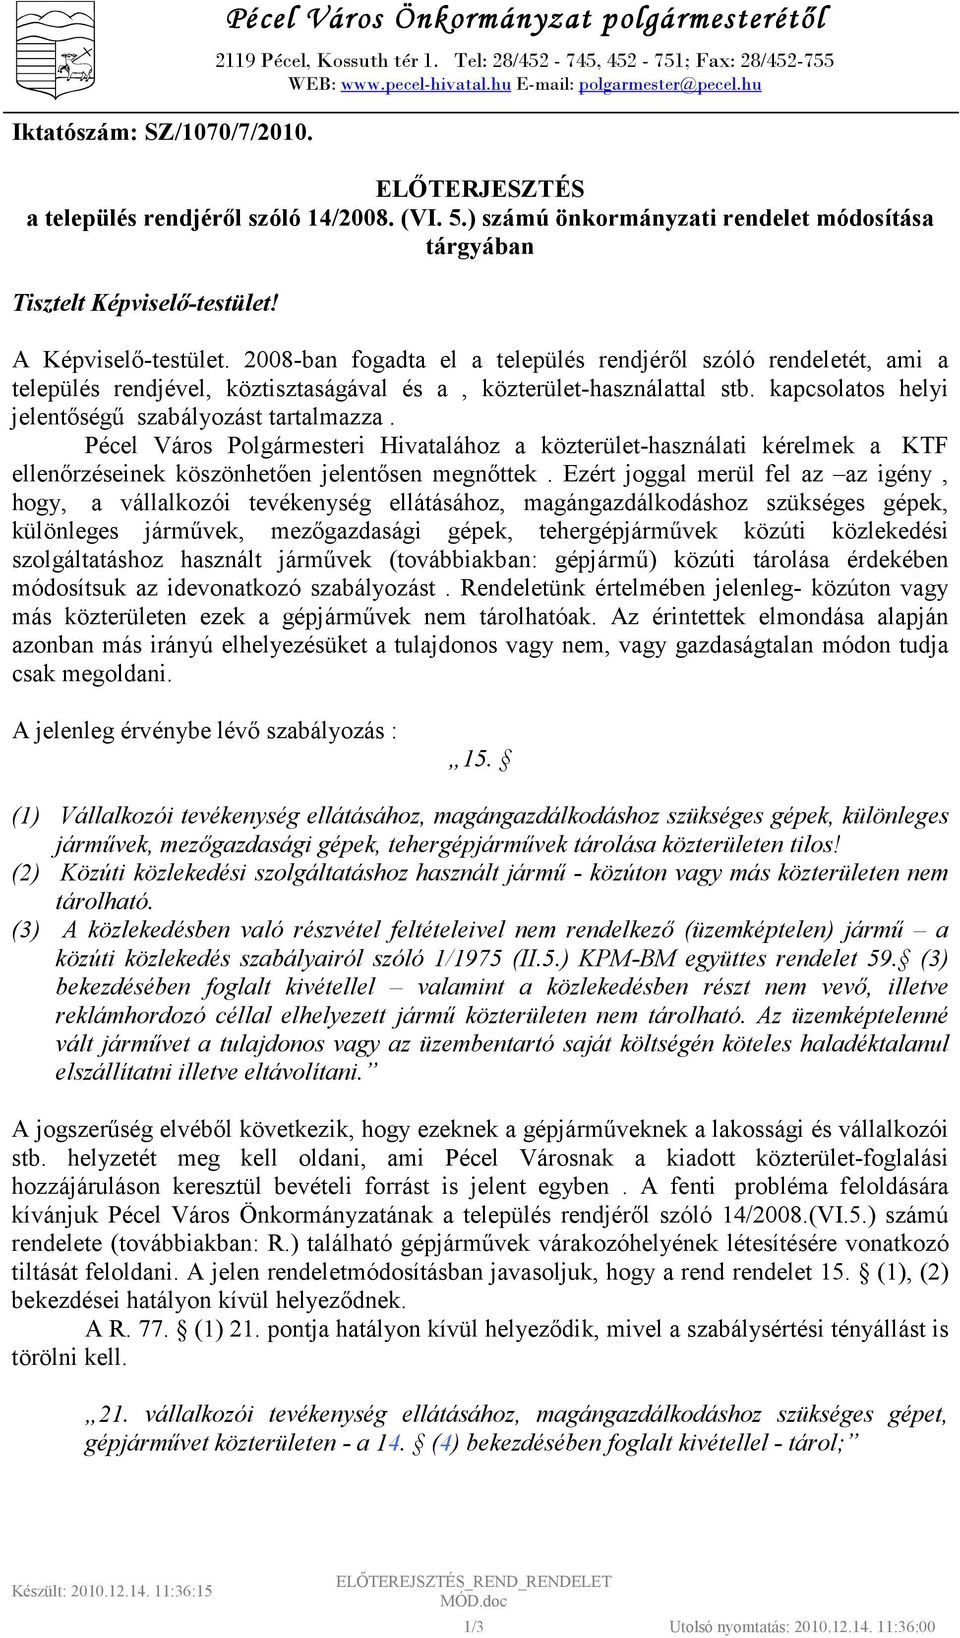 2008-ban fogadta el a település rendjérıl szóló rendeletét, ami a település rendjével, köztisztaságával és a, közterület-használattal stb. kapcsolatos helyi jelentıségő szabályozást tartalmazza.